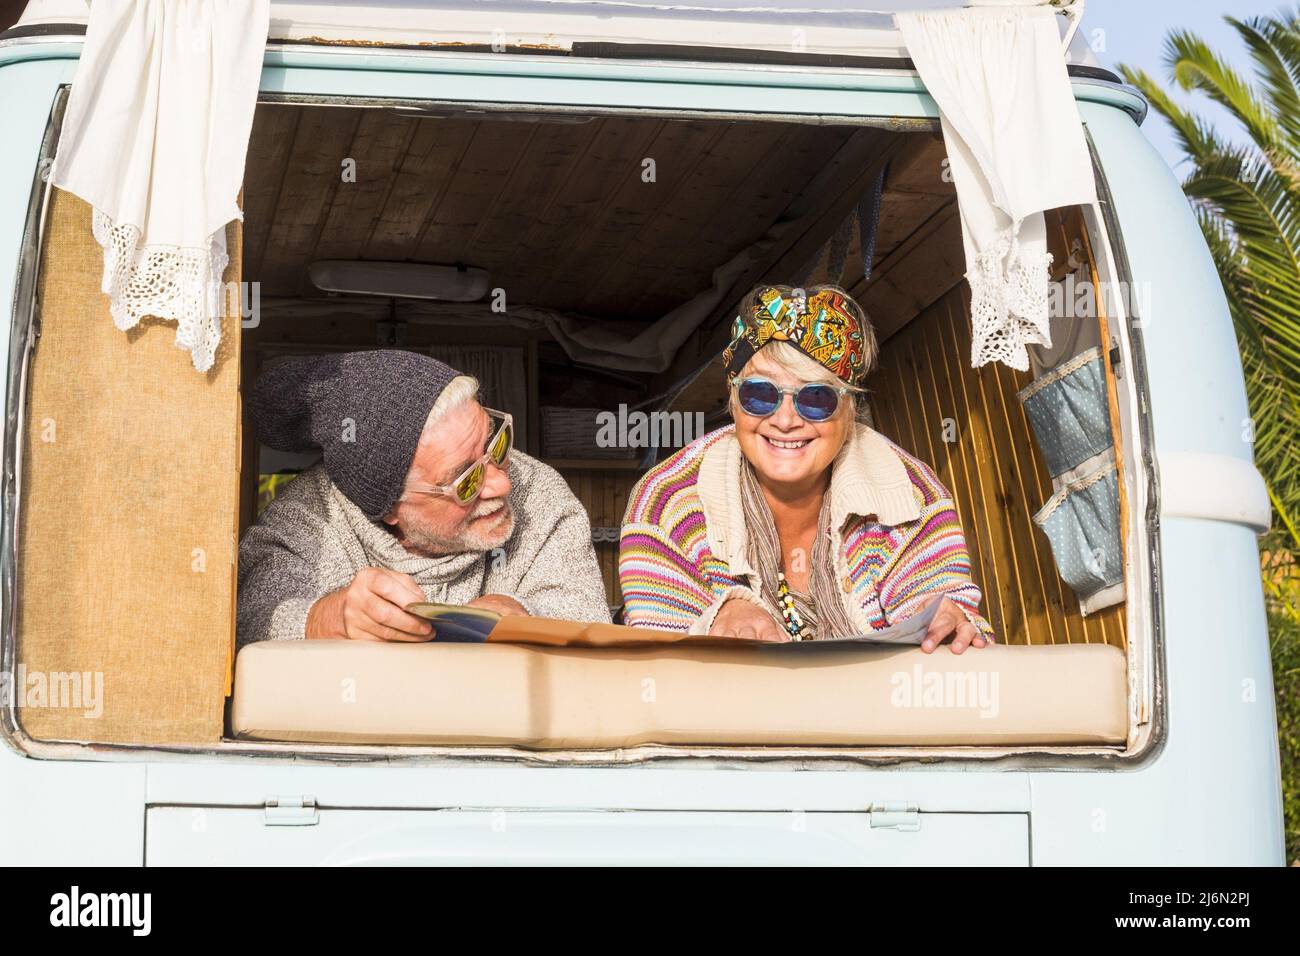 Glückliches Rentnerpaar im Retro-Vintage-Stil van oder Camper Planung einer Reise auf der Karte. Altes Paar genießt Urlaub Reisen im Wohnmobil. Stockfoto